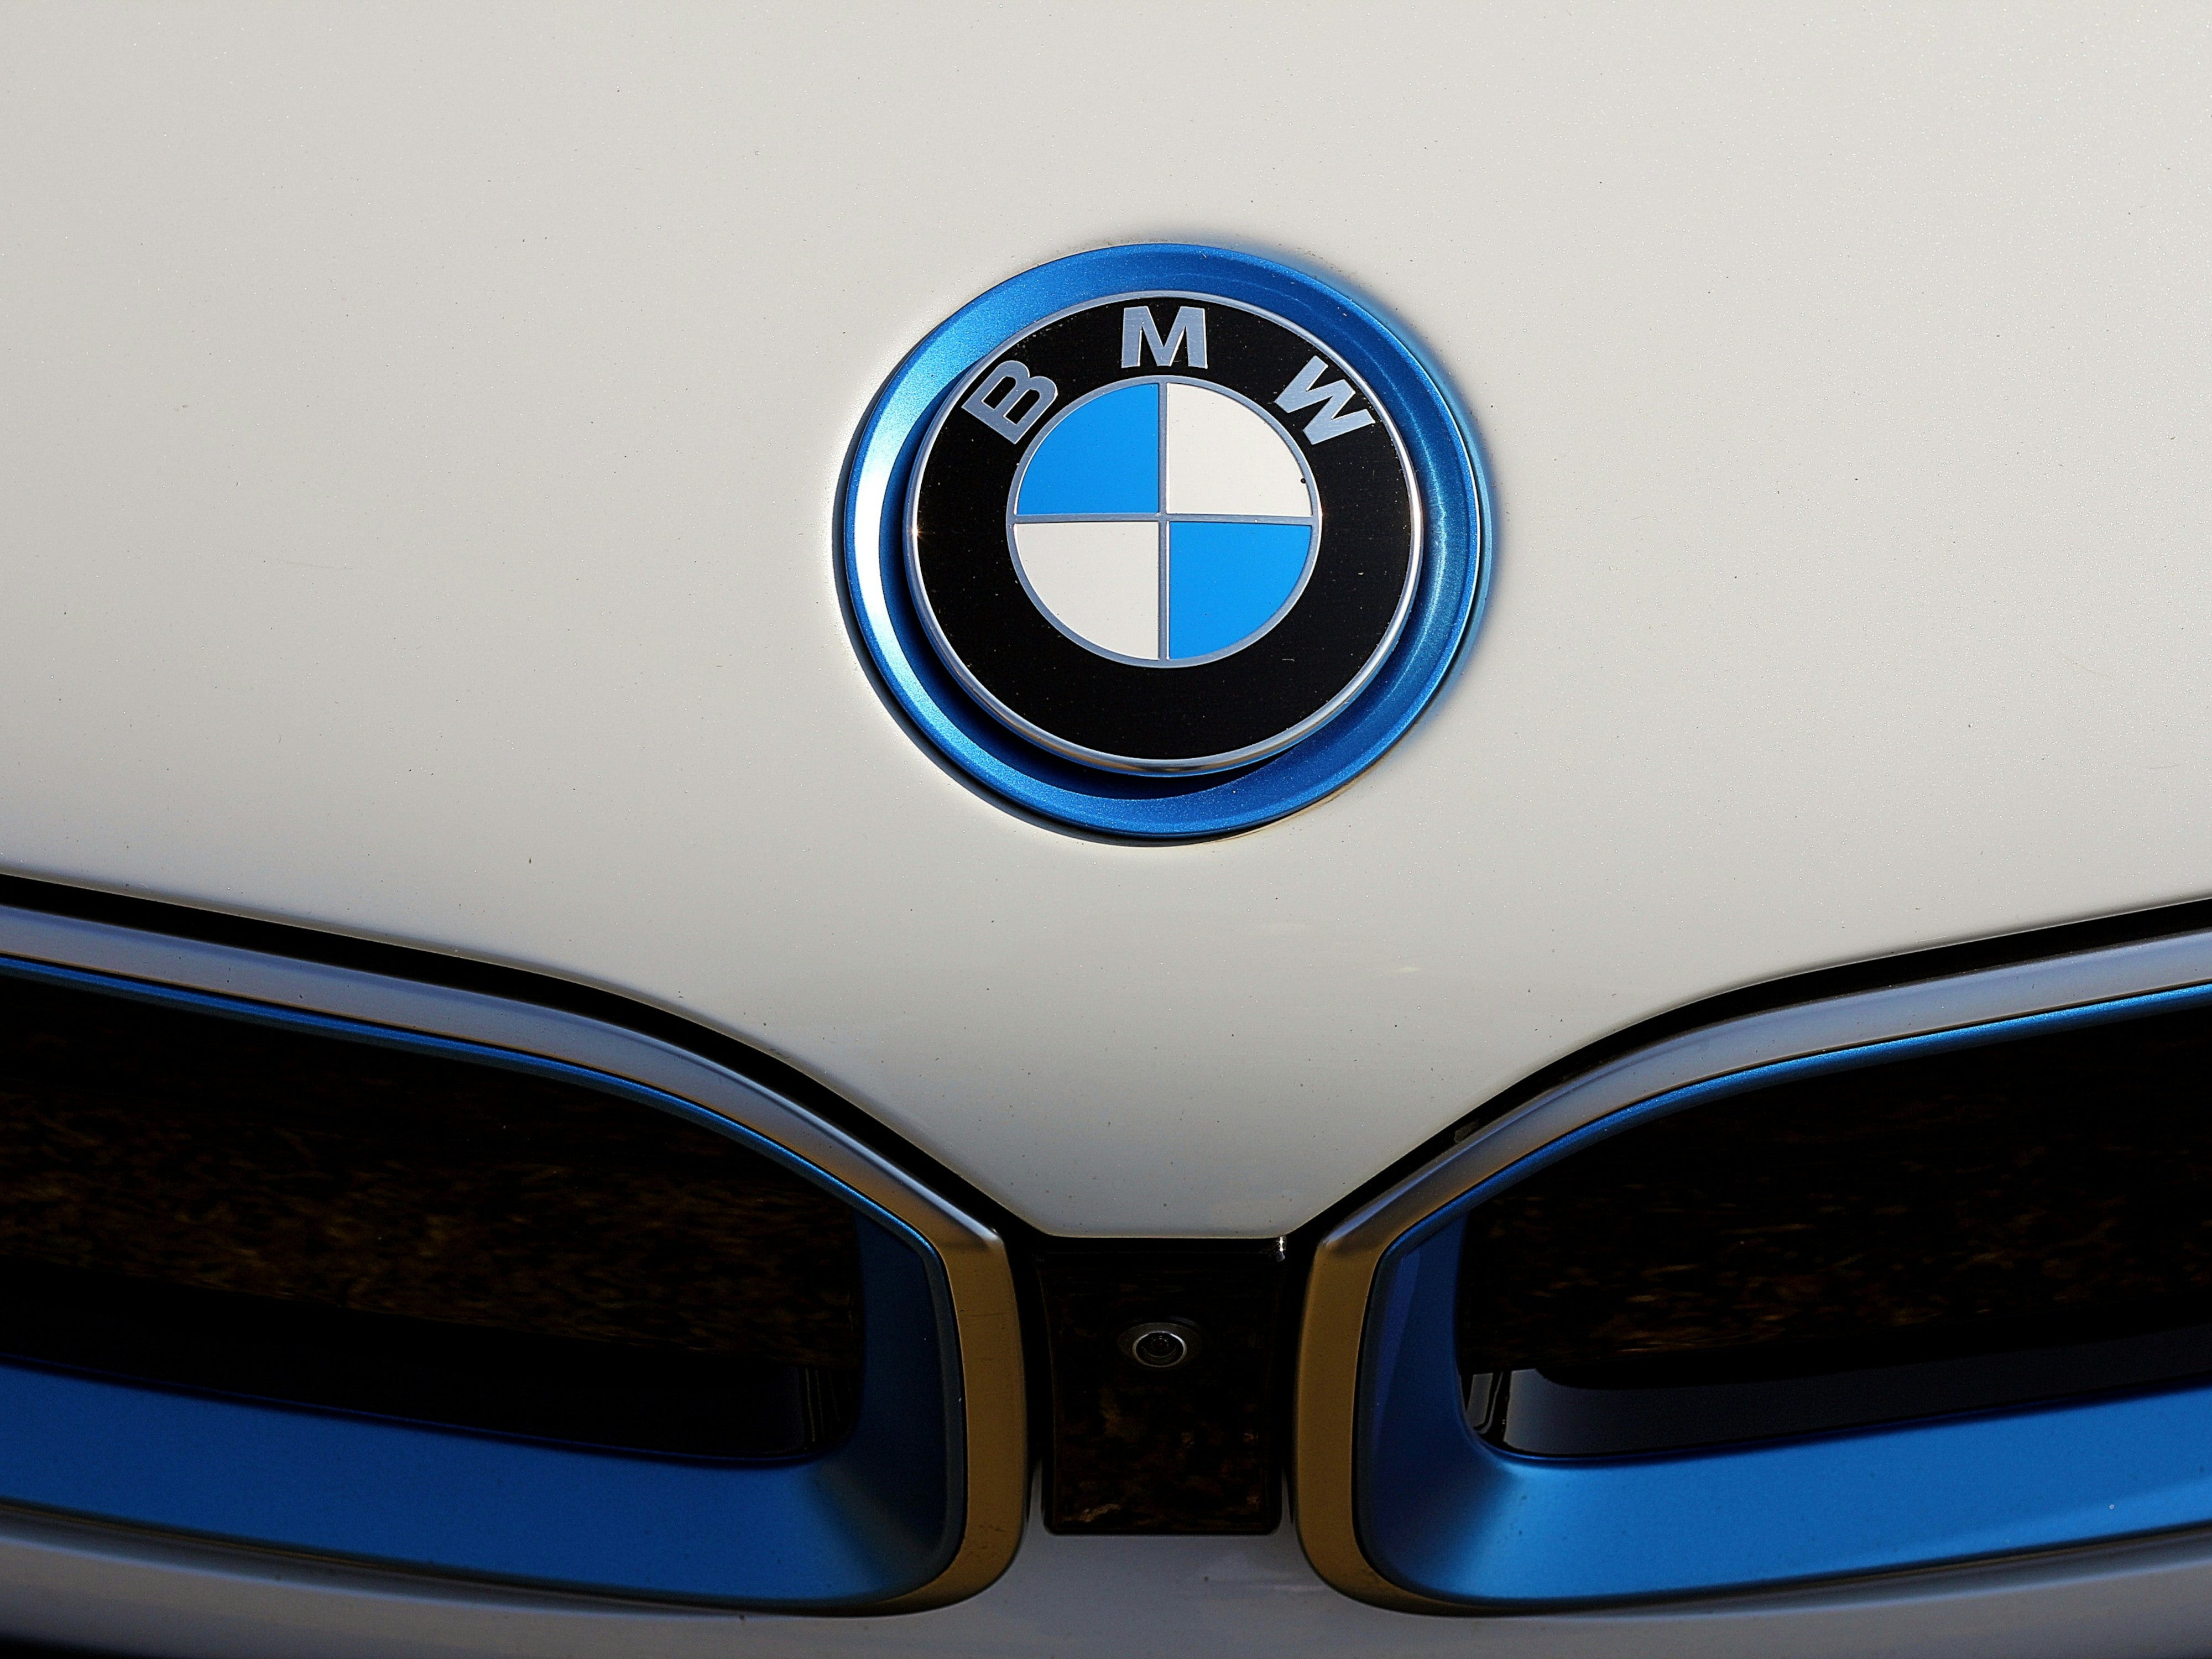 E-Auto: BMW storniert Akku-Lieferung für 2 Milliarden Euro - was steckt dahinter?